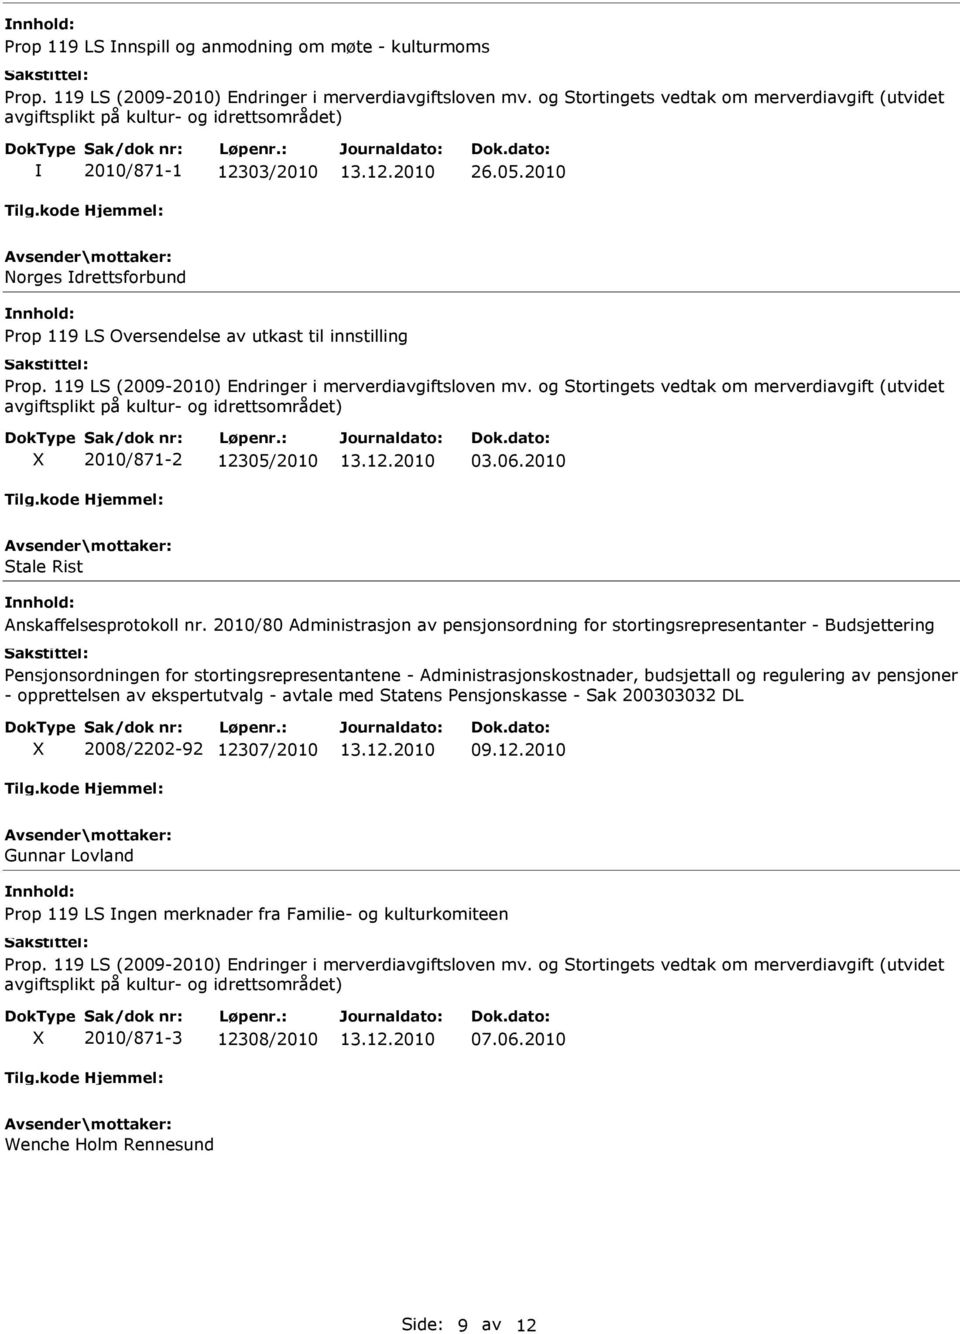 2010 Norges drettsforbund Prop 119 LS Oversendelse av utkast til innstilling Prop. 119 LS (2009-2010) Endringer i merverdiavgiftsloven mv.